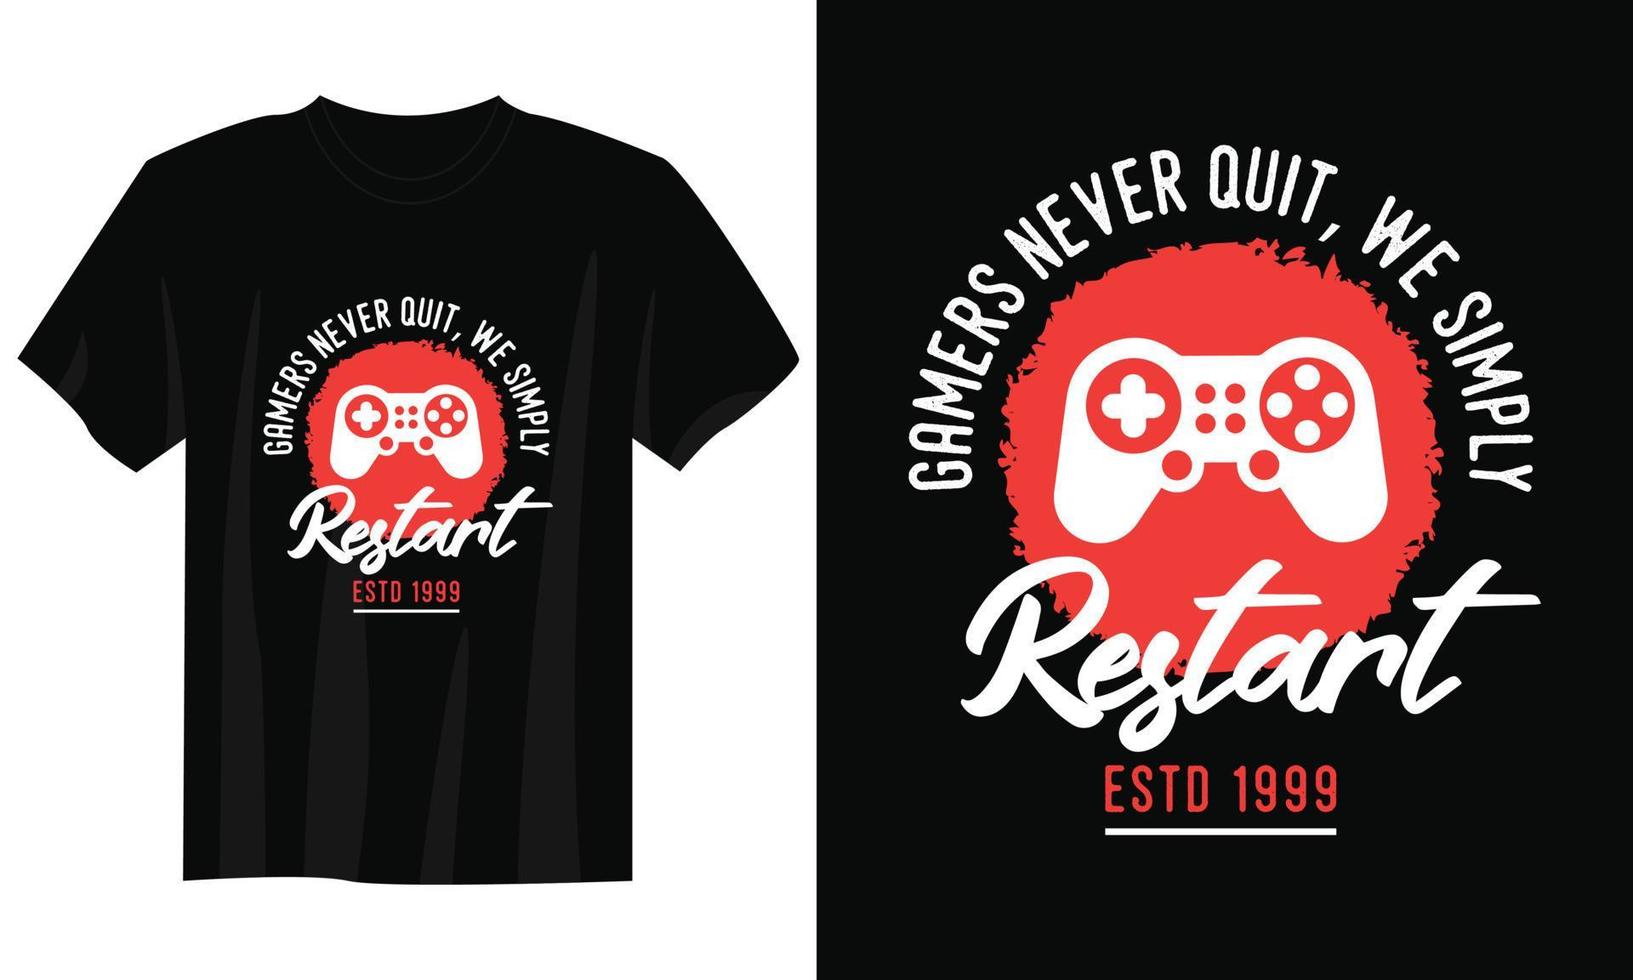 gamers never quit we restart gaming t-shirt design, Gaming gamer t-shirt design, Vintage gaming t-shirt design, Typography gaming t-shirt design, Retro gaming gamer t-shirt design vector